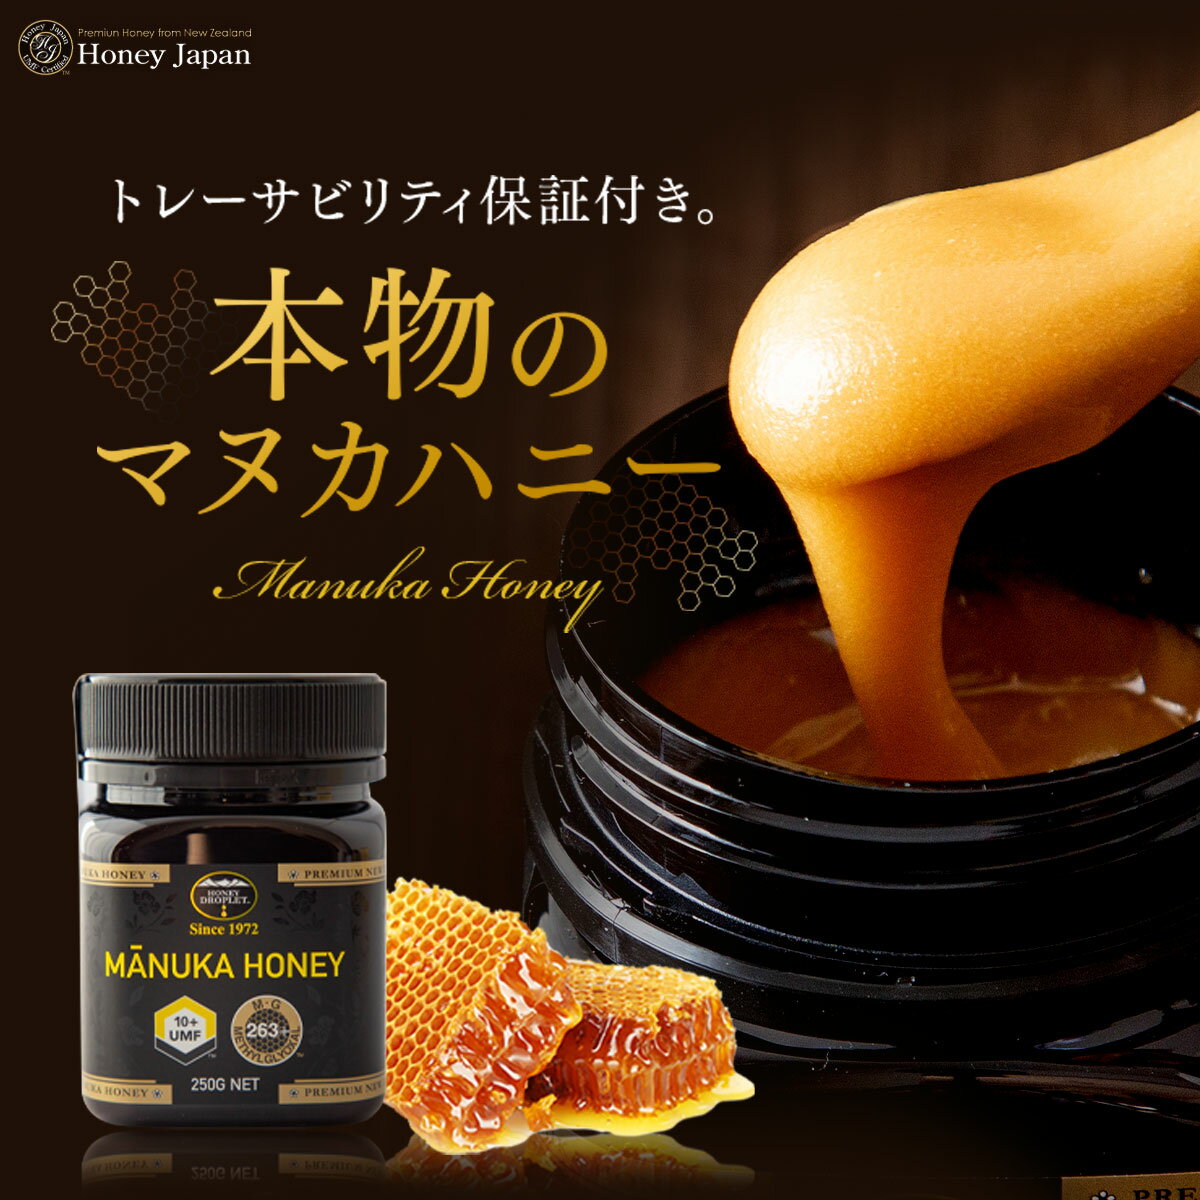 【送料無料】Honey Japan(ハニージャパン)マヌカハニー(37ハニー)UMF(ユニーク・マヌカ・ファクター)10+　MANUKA HONEY UMF10+(250g)【2本セット】トレーサビリティ保証付き 2